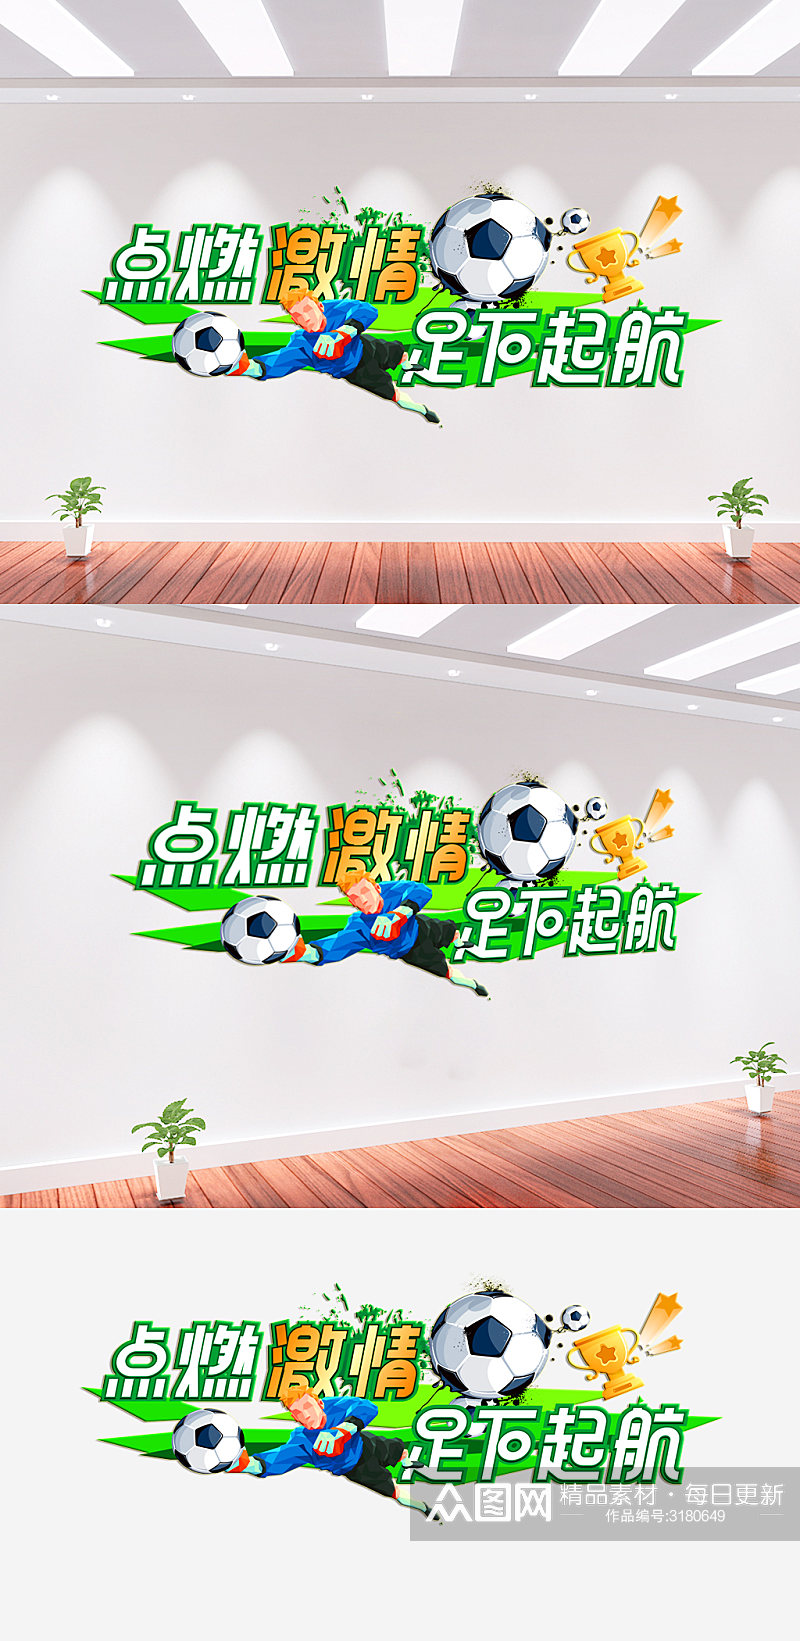 足球体育运动文化墙背景墙素材